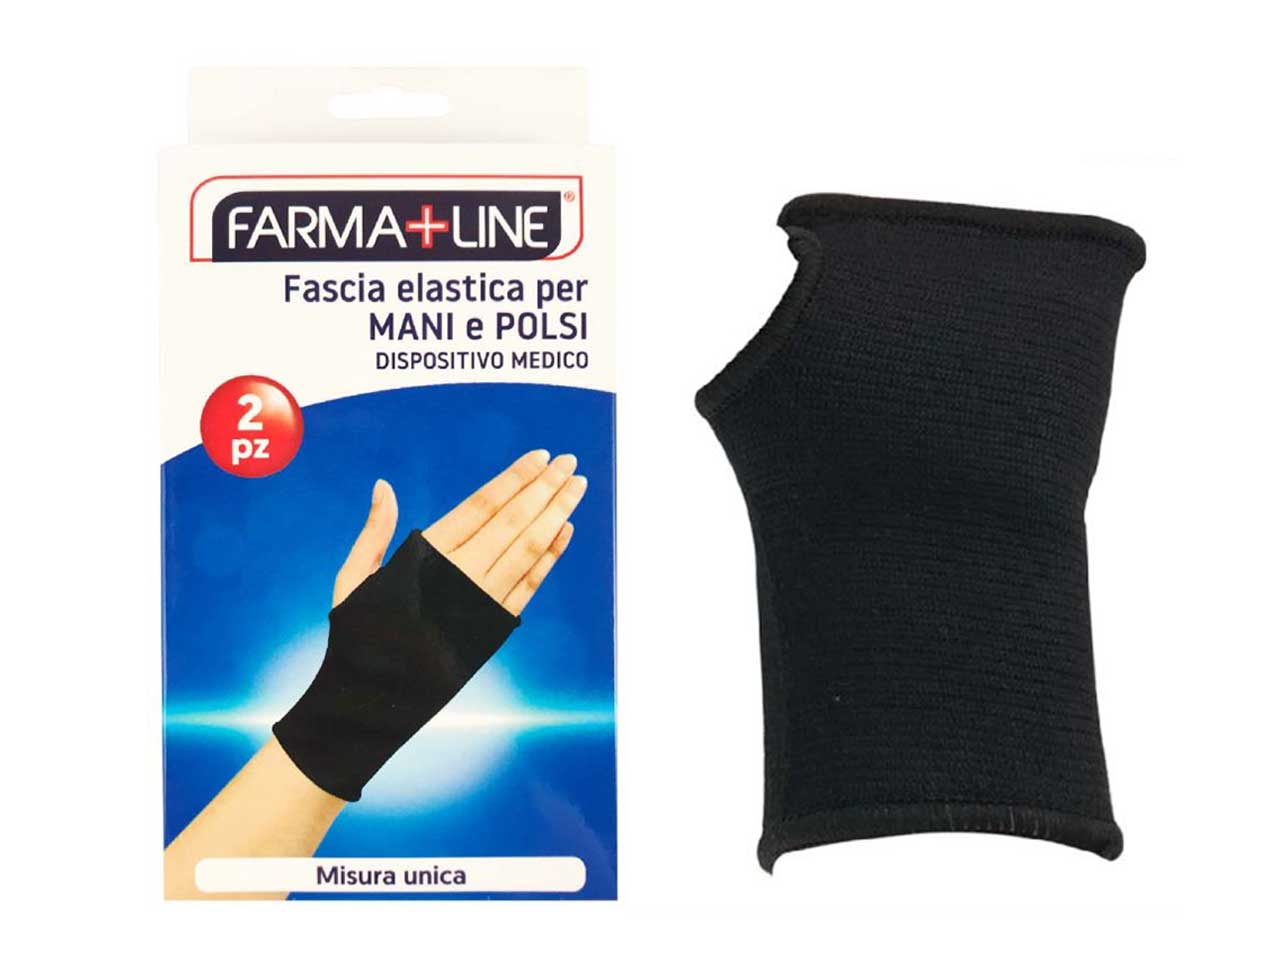 Fascia elastica per mani polsi - dispositivo medico - misura unica- confezione da 2 fasce